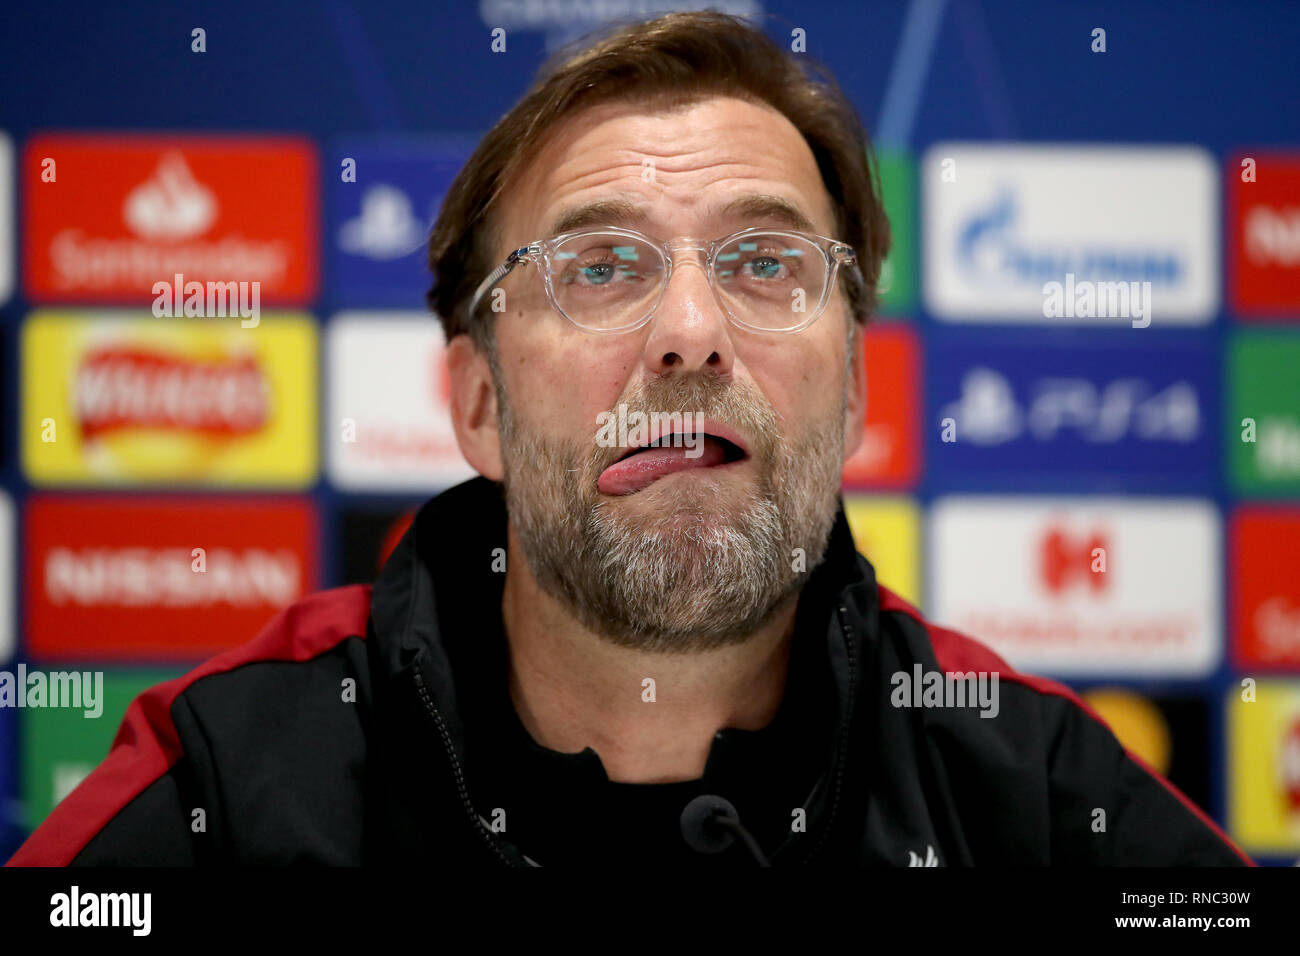 Manager del Liverpool Jurgen Klopp durante la conferencia de prensa en Anfield, Liverpool. Foto de stock